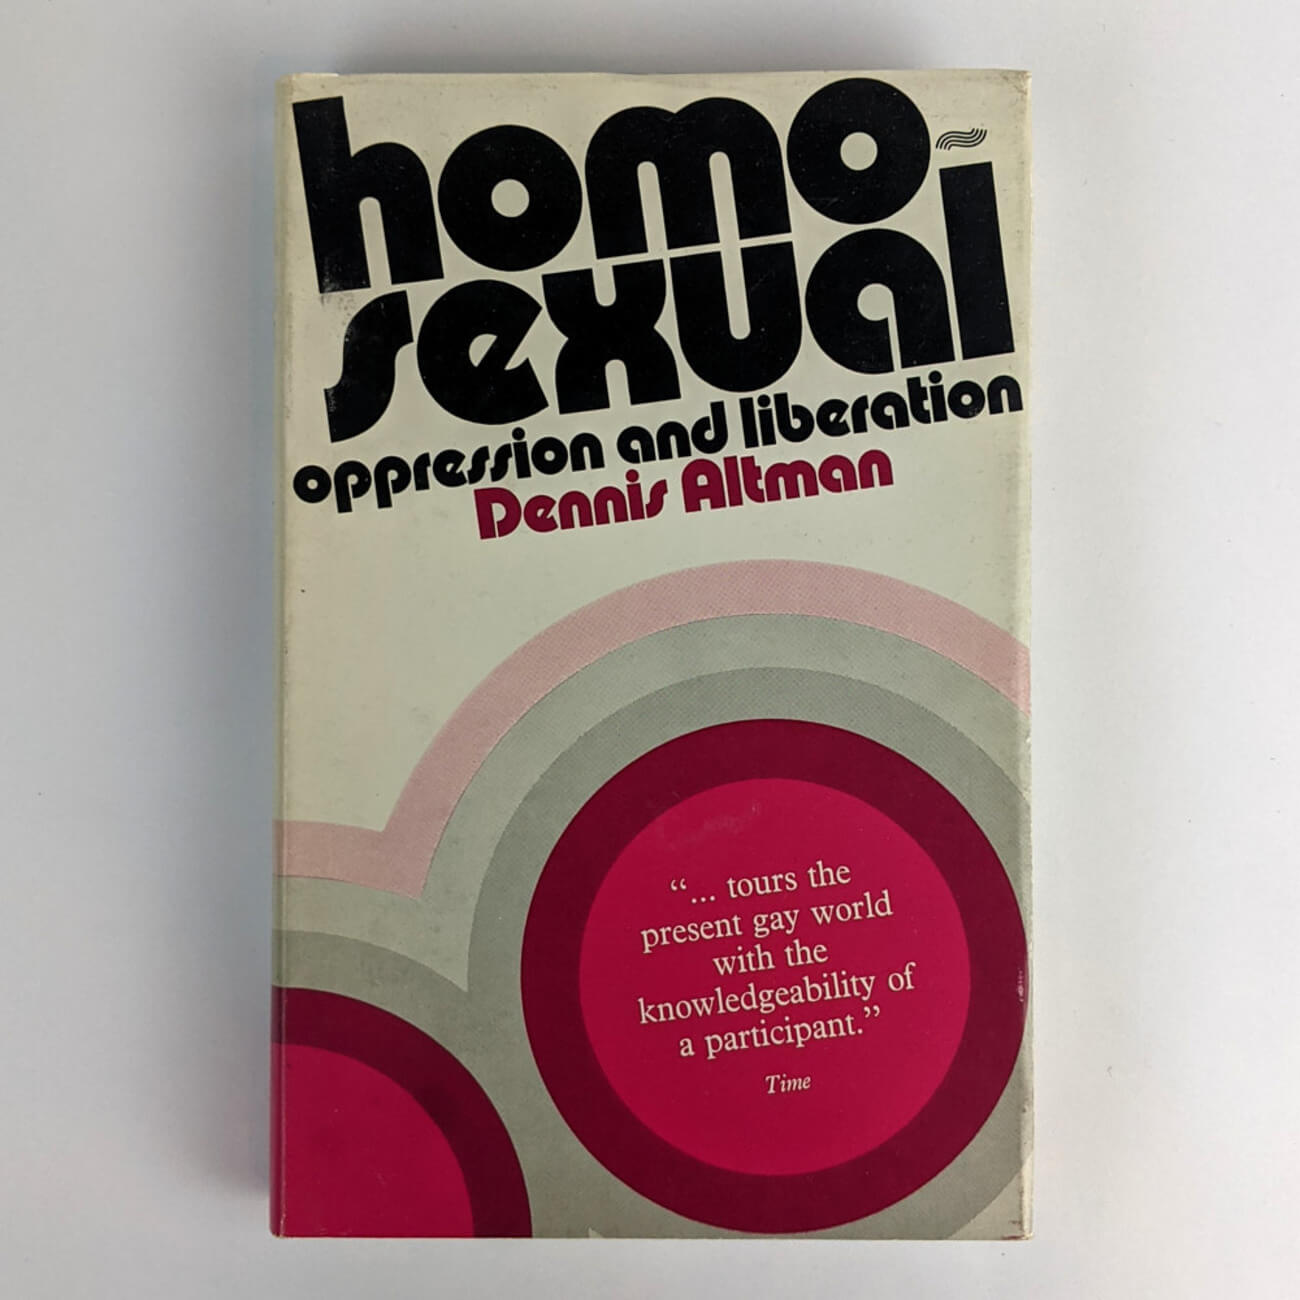 Homosexual: Oppression and Liberation di Dennis Altman, edizione australiana del 1971